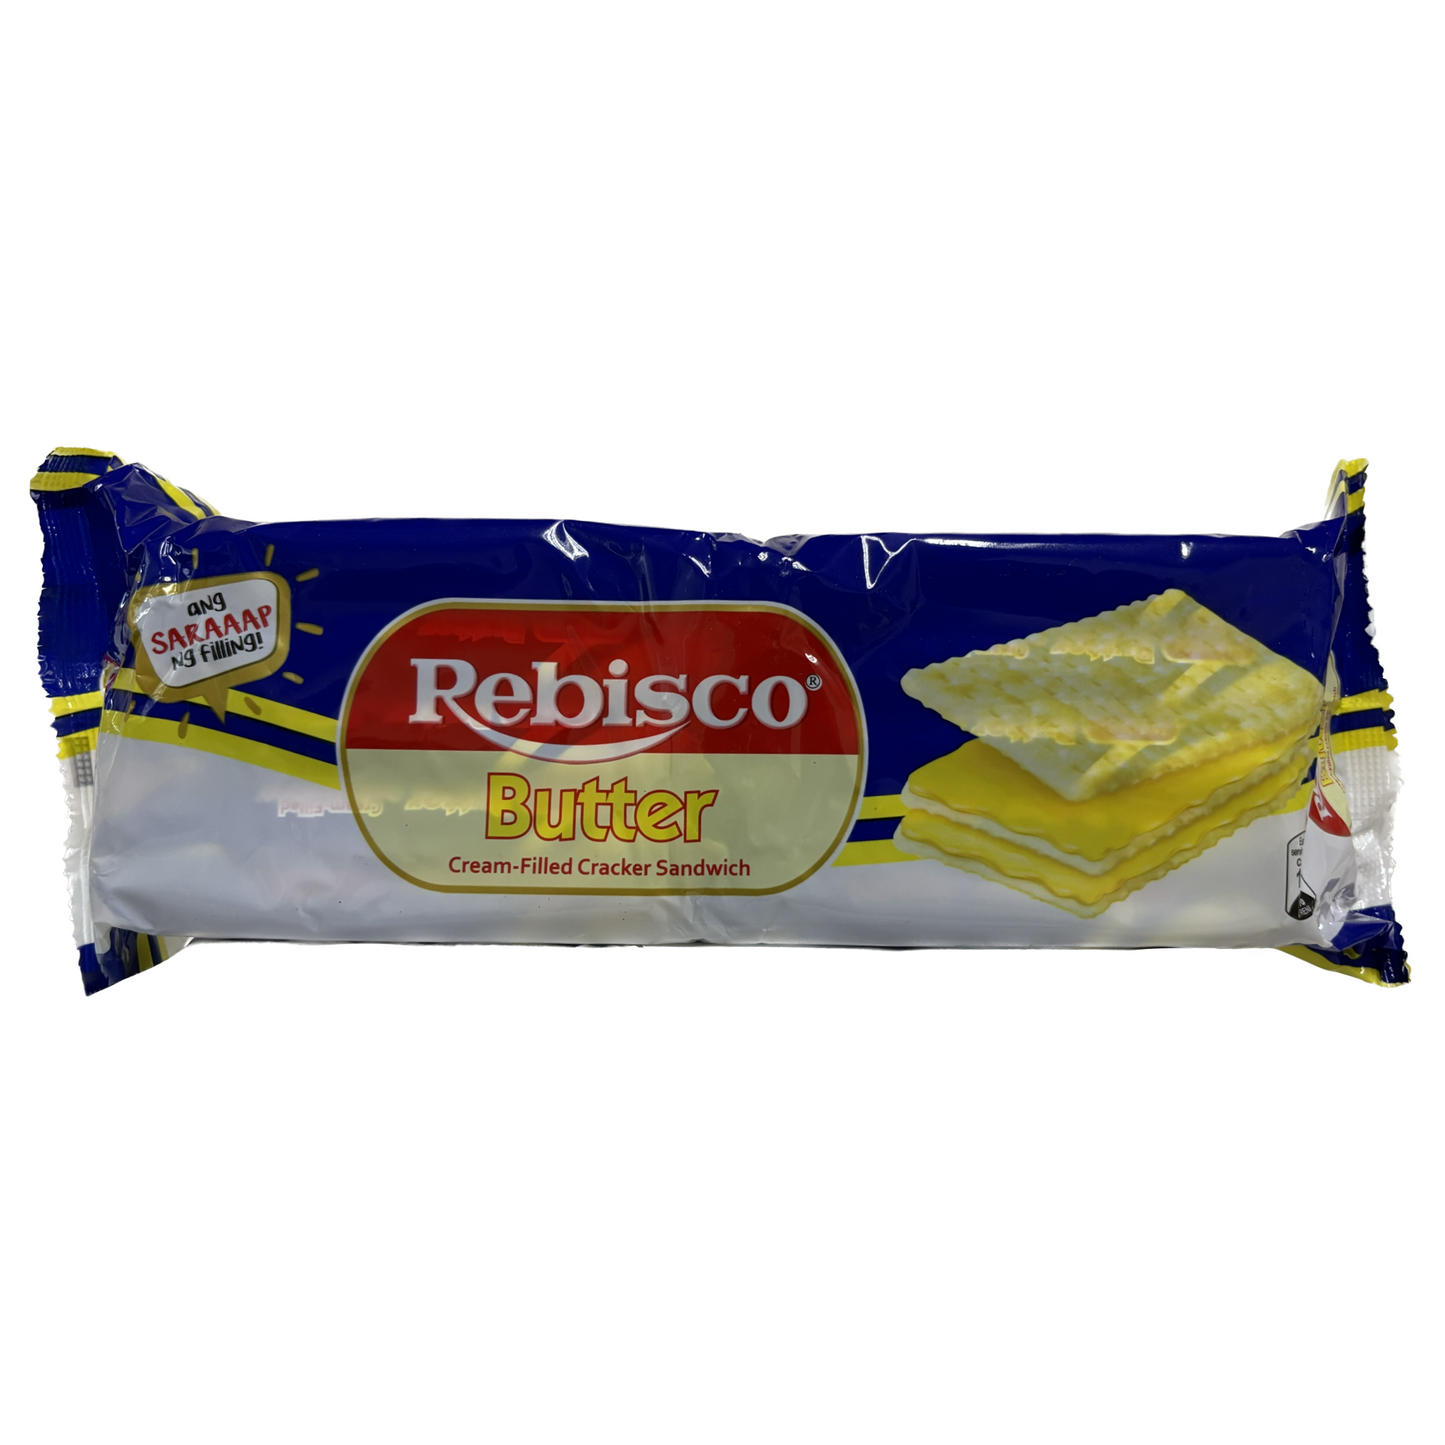 Rebisco Butter Cream-Filled Cracker Sandwich (32g x 10 packs)